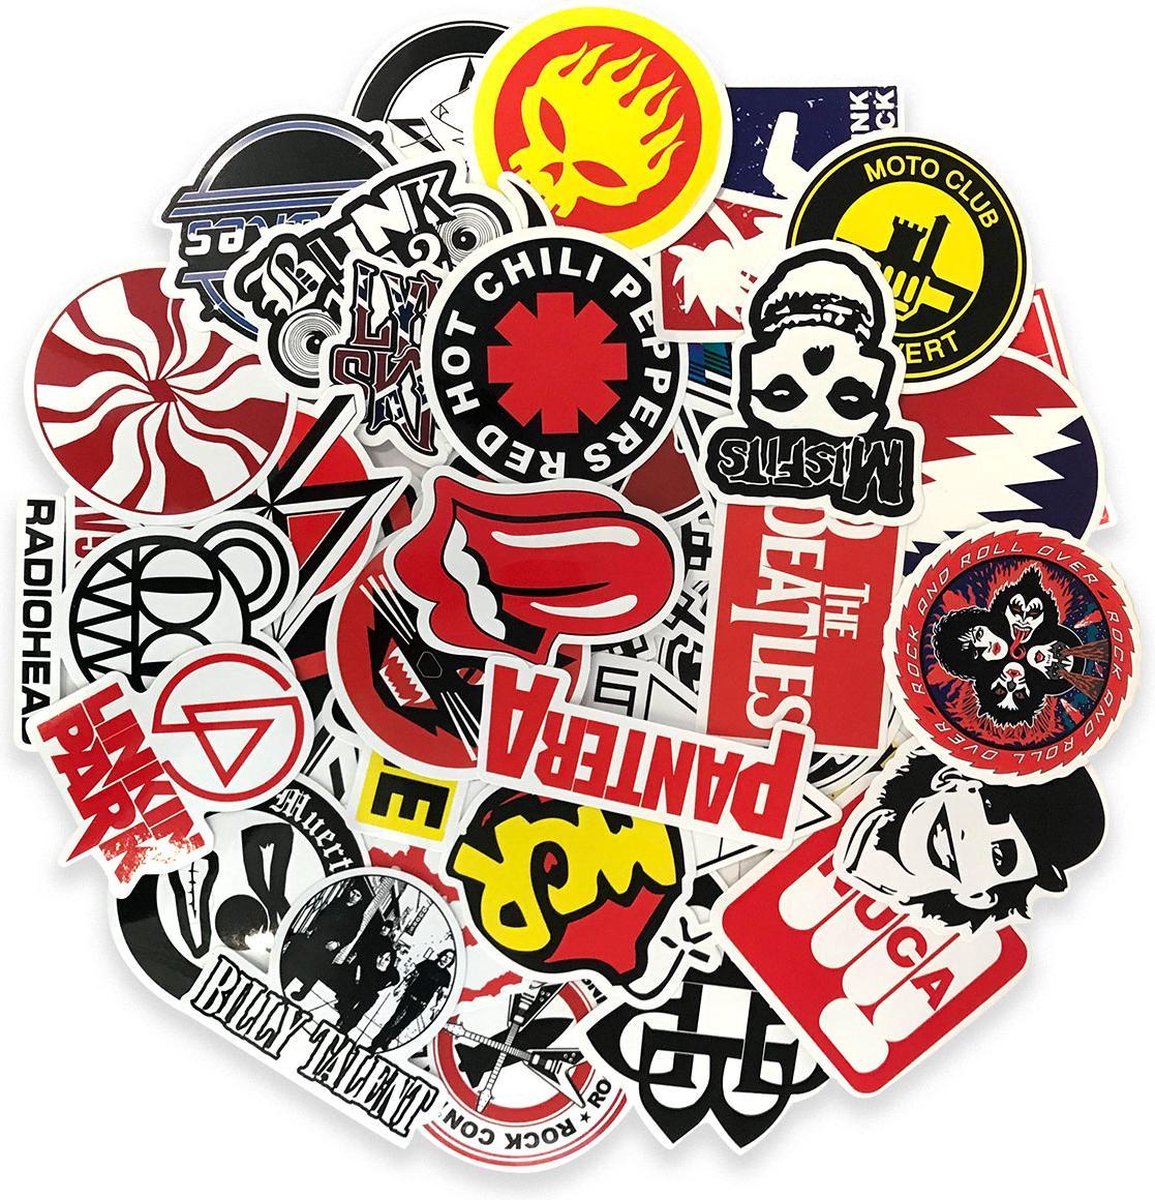 Suitup rock band sticker set - 50 stuks weerbestendige vinyl stickers voor op je laptop, skateboard of gitaar. - Suitup